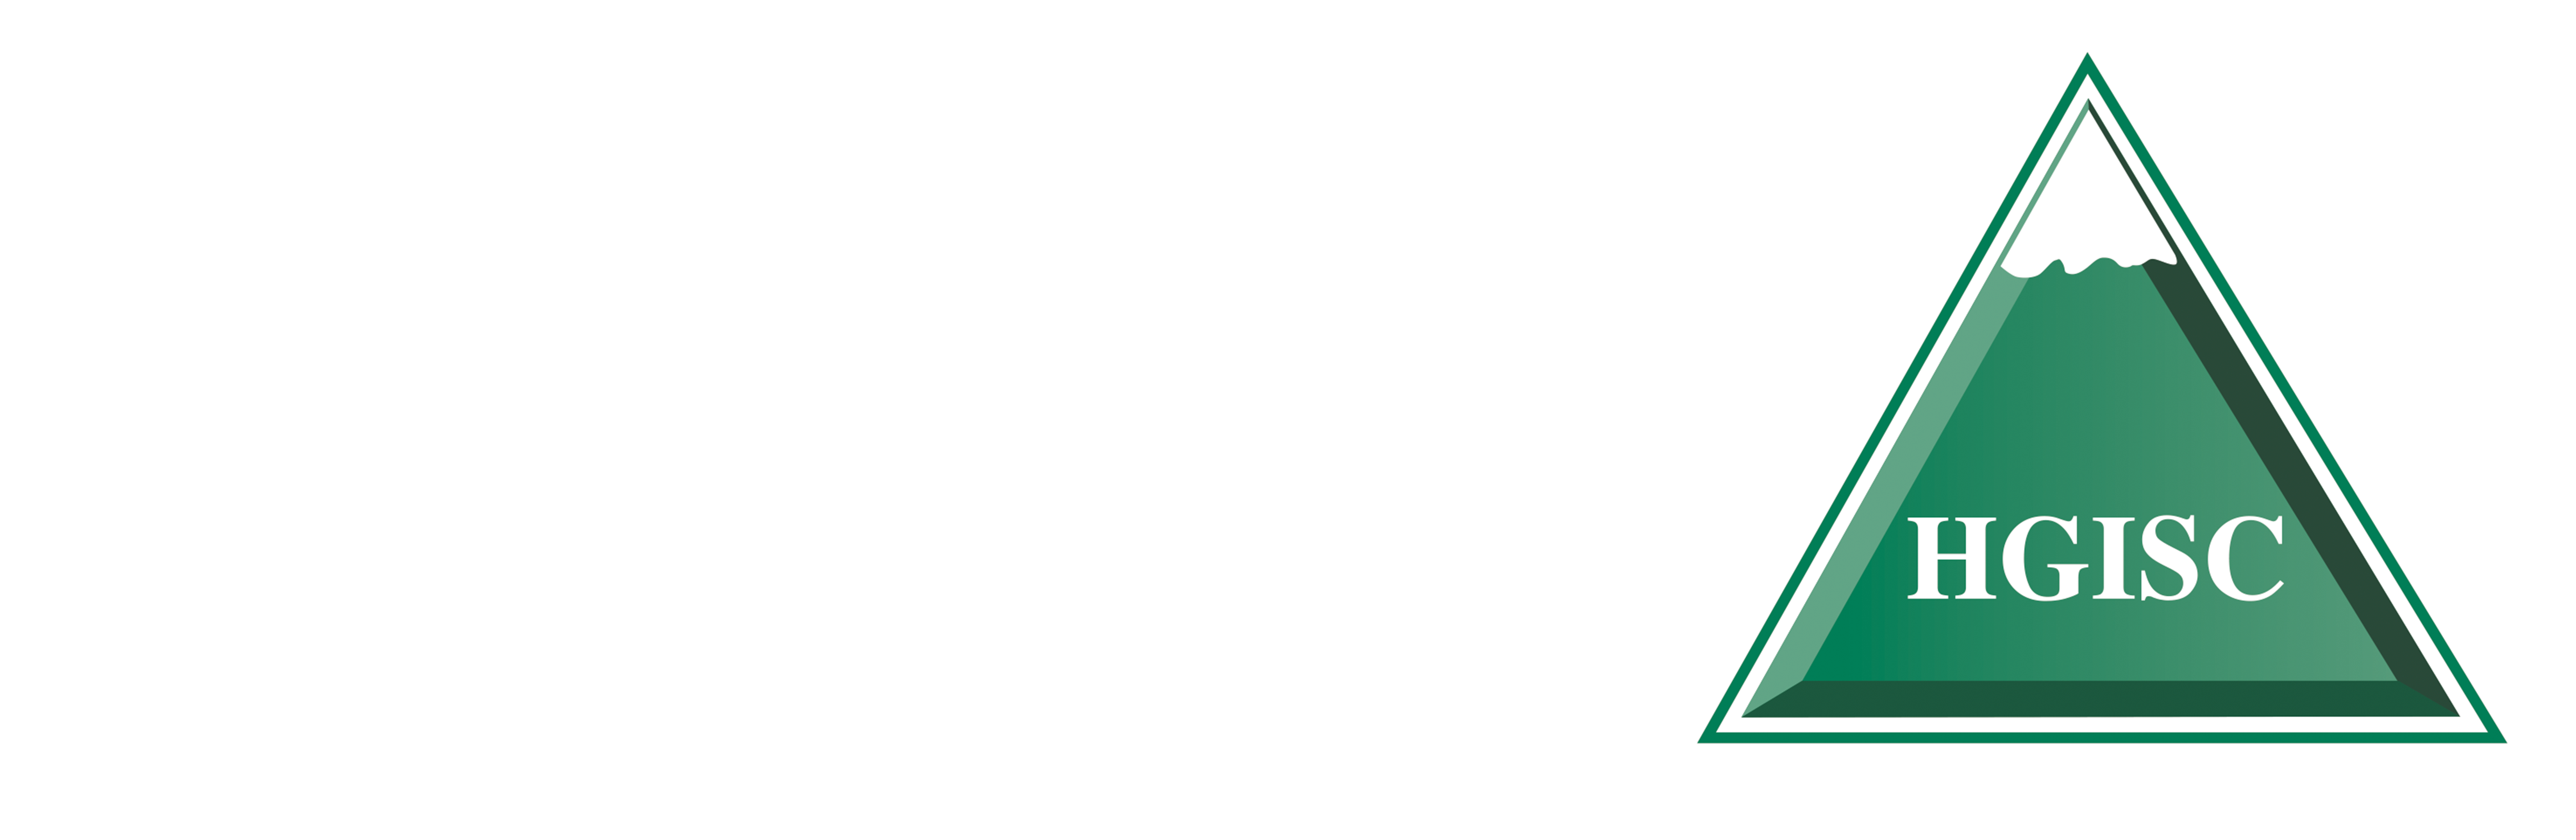 Shaker Group